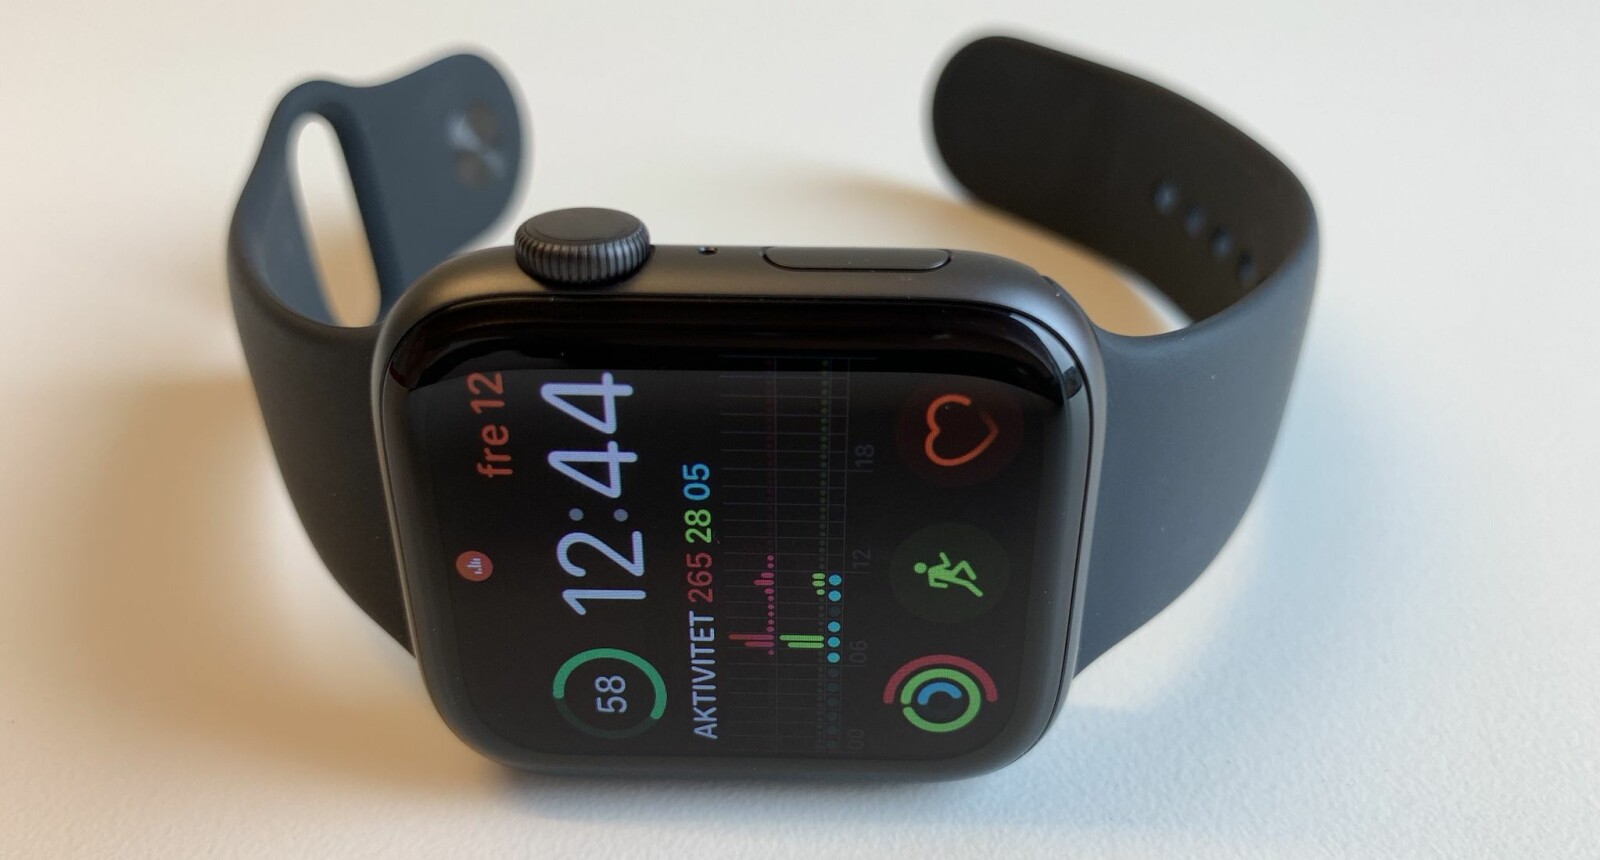 <b>NY APPLE WATCH:</b> Apple Watch Series 4 har for første gang fått en designendring. For første gang gir klokken en tilnærmet problemfri brukeropplevelse også.